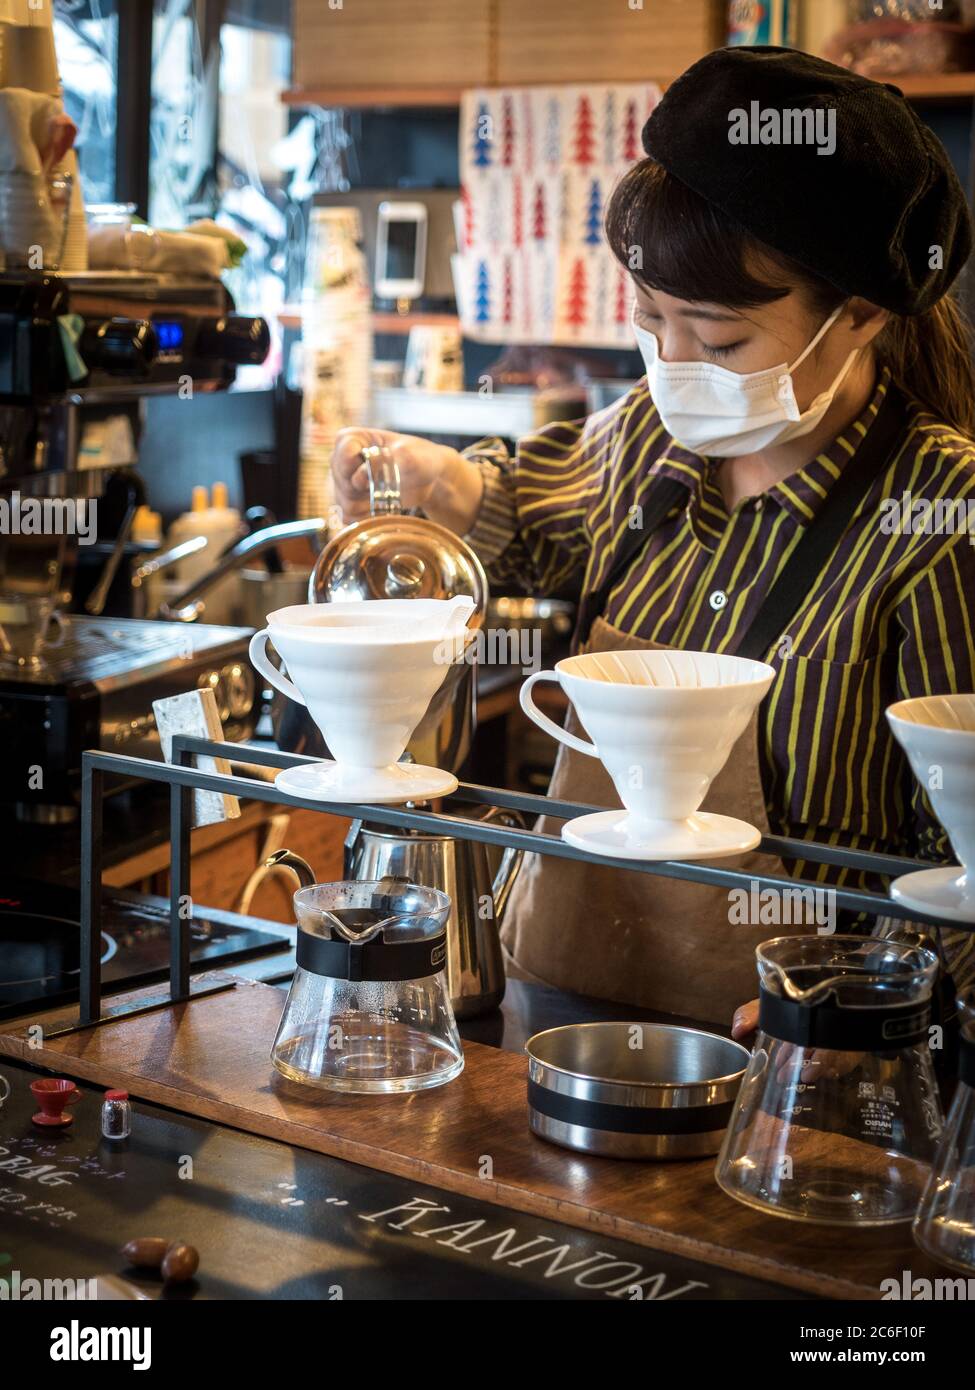 Nagoya, Aichi, Japon - Femme Barista portant un masque. Faire verser sur le café dans le café Kannon. Populaire pour le café goutte-à-goutte, les biscuits et les bonbons mignons. Banque D'Images